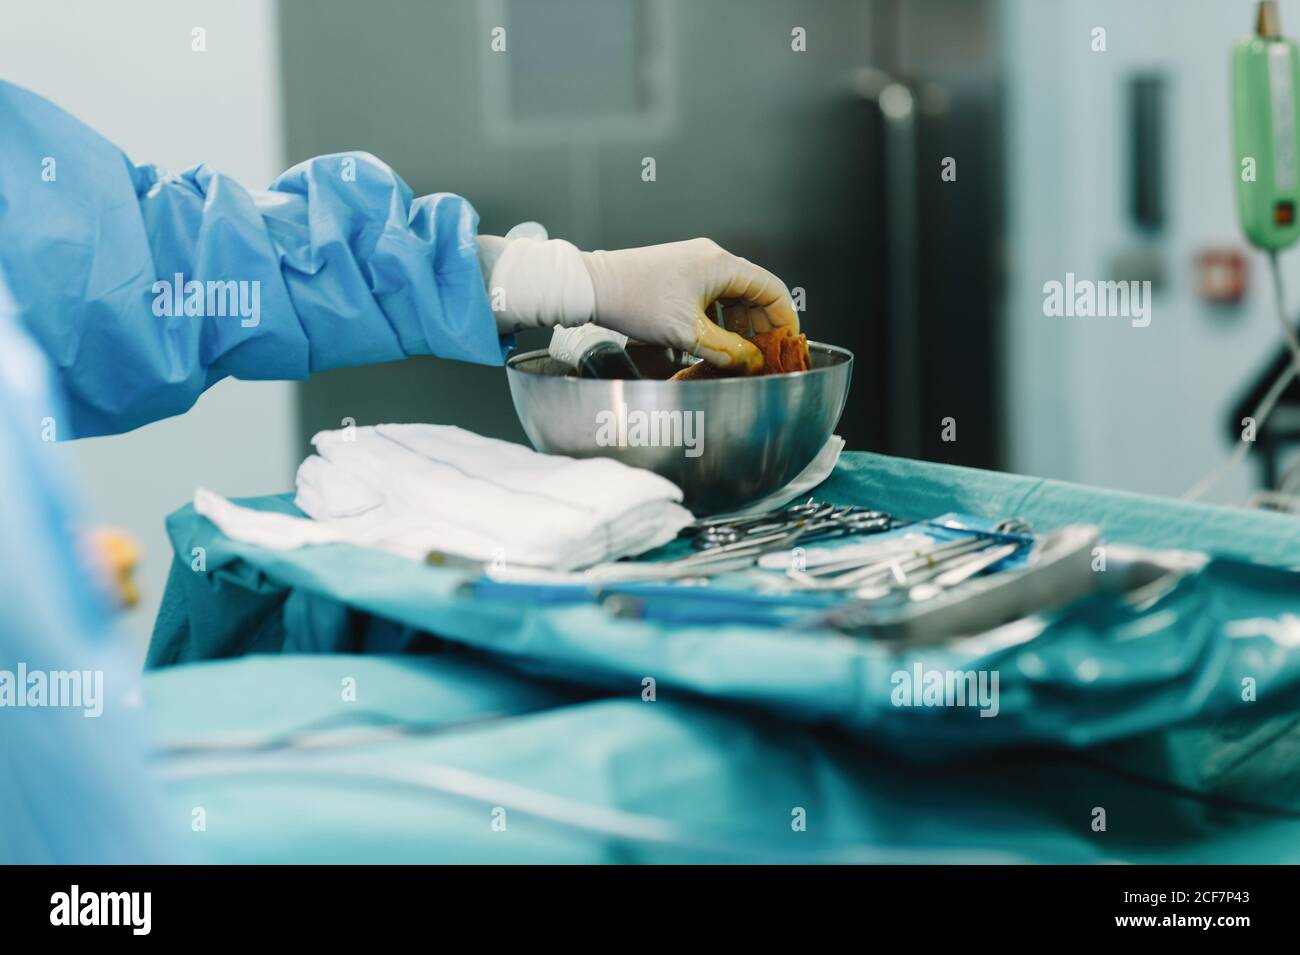 Crop Hand von Sanitäter in blauem Kleid und weißen Handschuh Tampon mit Jod  in der Schale während der Operation zusammendrücken Stockfotografie - Alamy